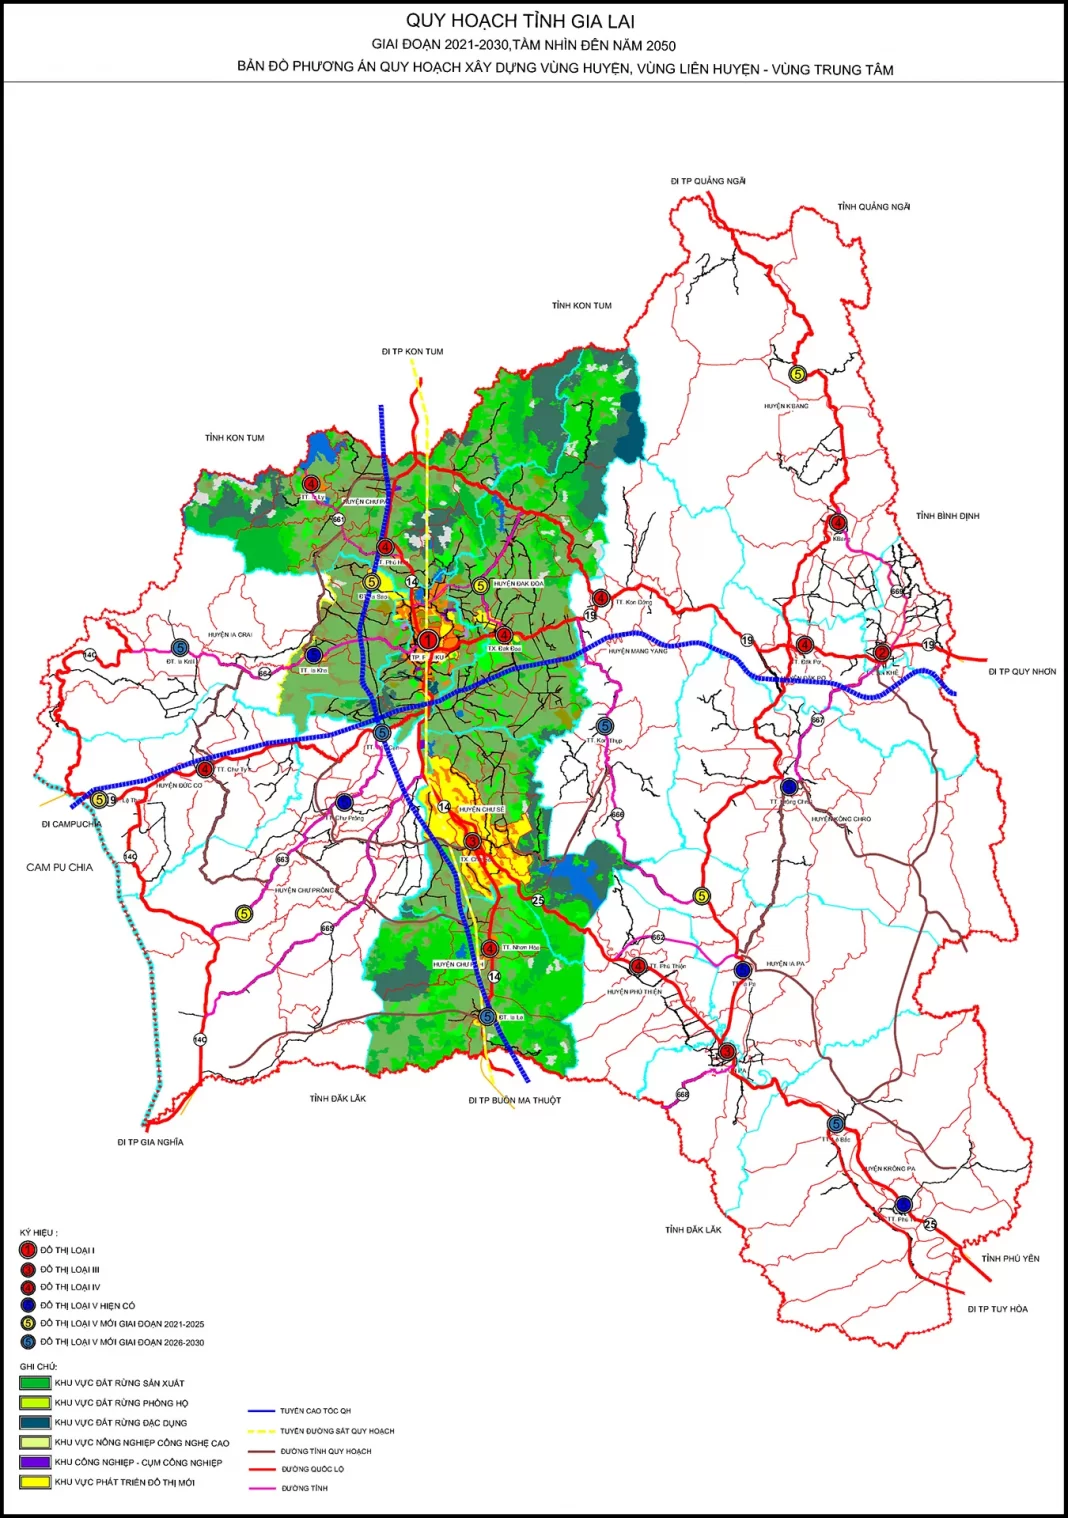 Quy hoạch xây dựng vùng liên huyện tỉnh Gia Lai thời kỳ 2021 - 2030, tầm nhìn đến năm 2050.